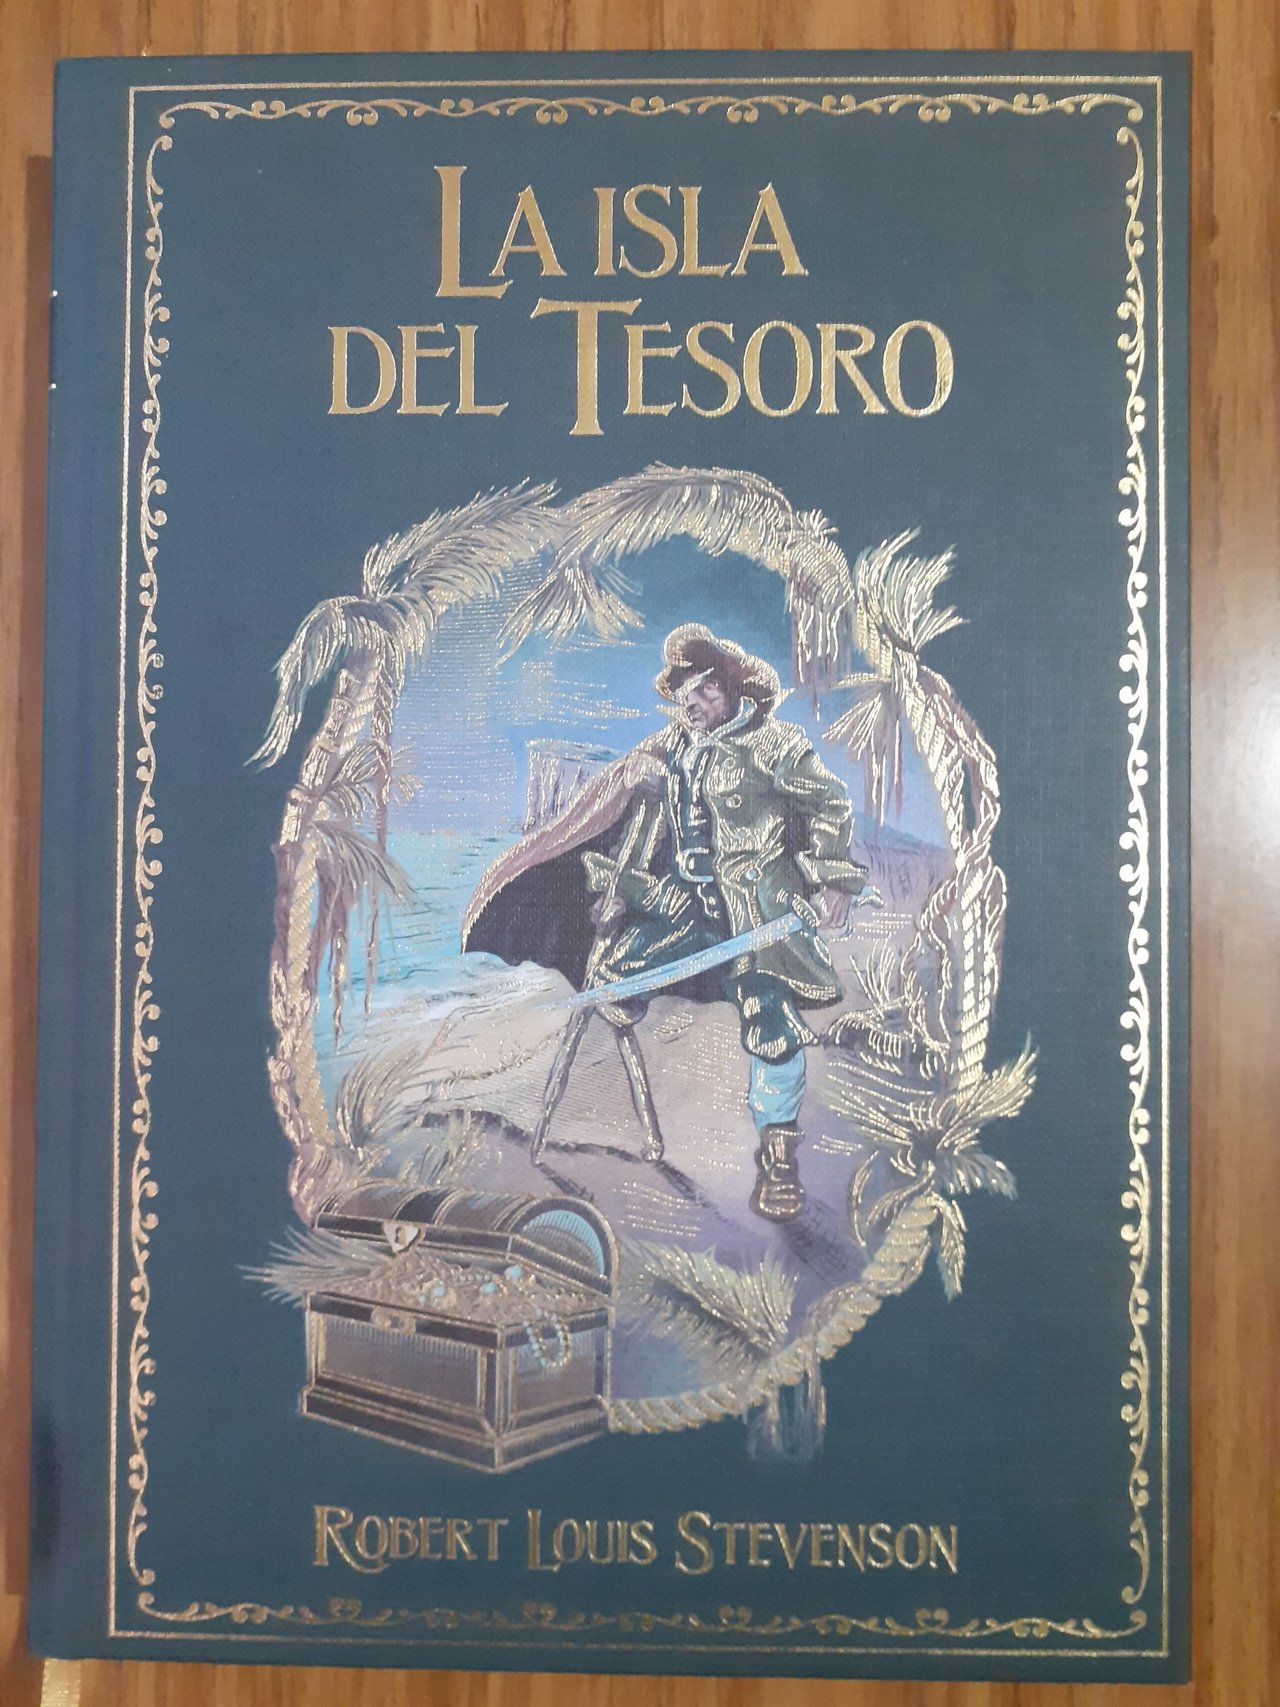 La isla del tesoro [Treasure Island] by Robert Louis Stevenson